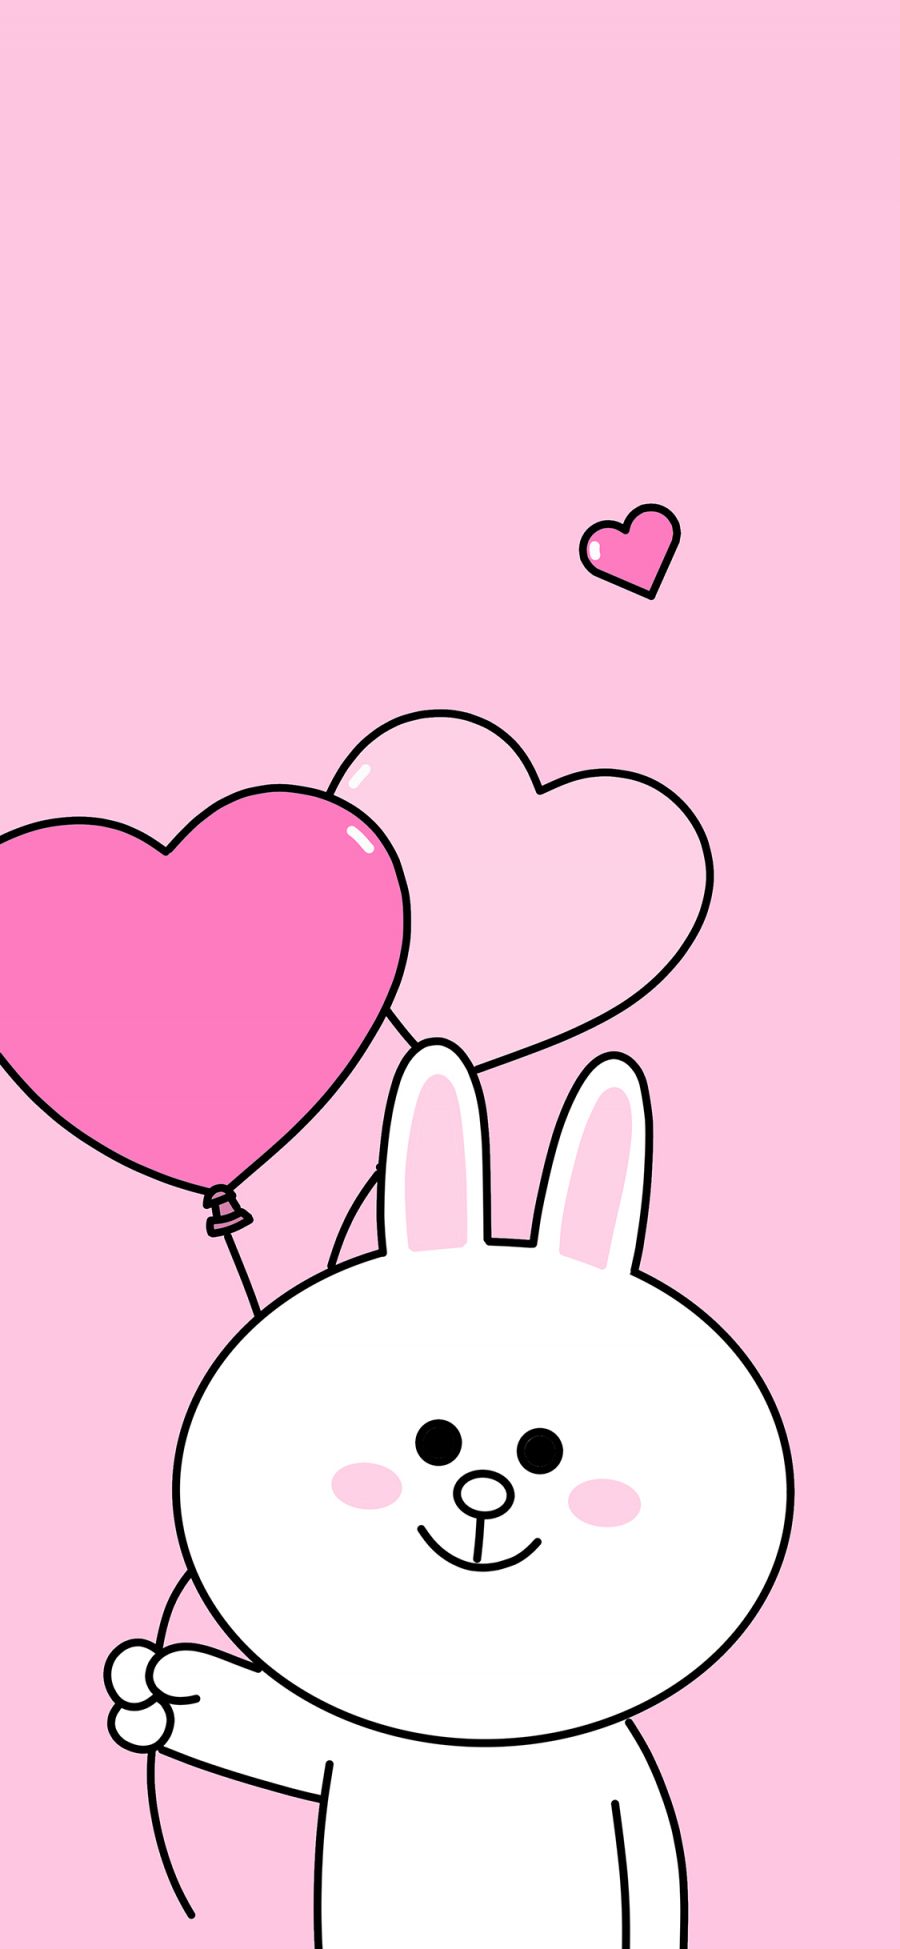 [2436×1125]可妮兔 linefriends 爱心 气球 可爱 粉色 苹果手机动漫壁纸图片